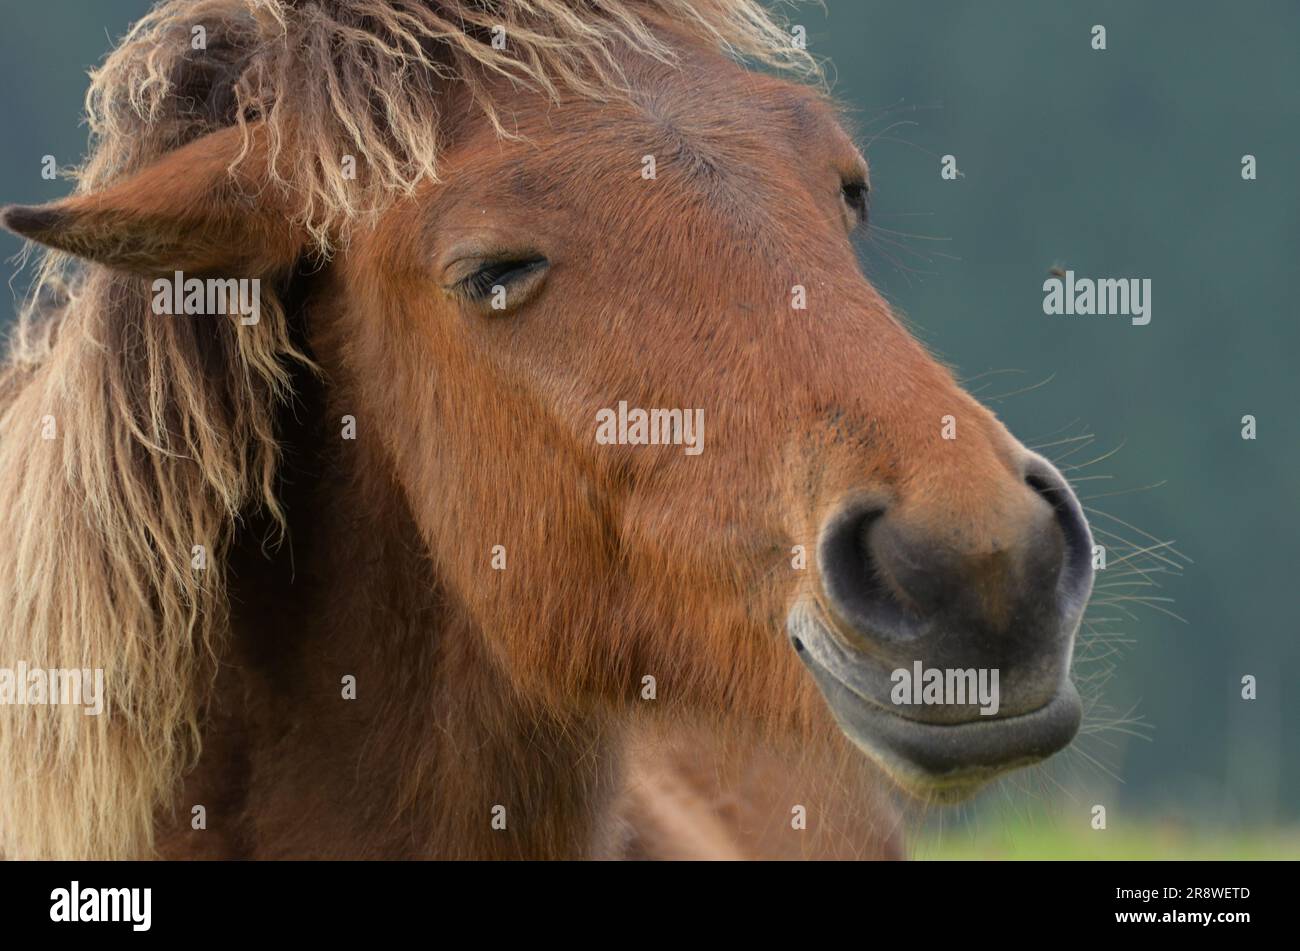 Misaki horse's face Stock Photo